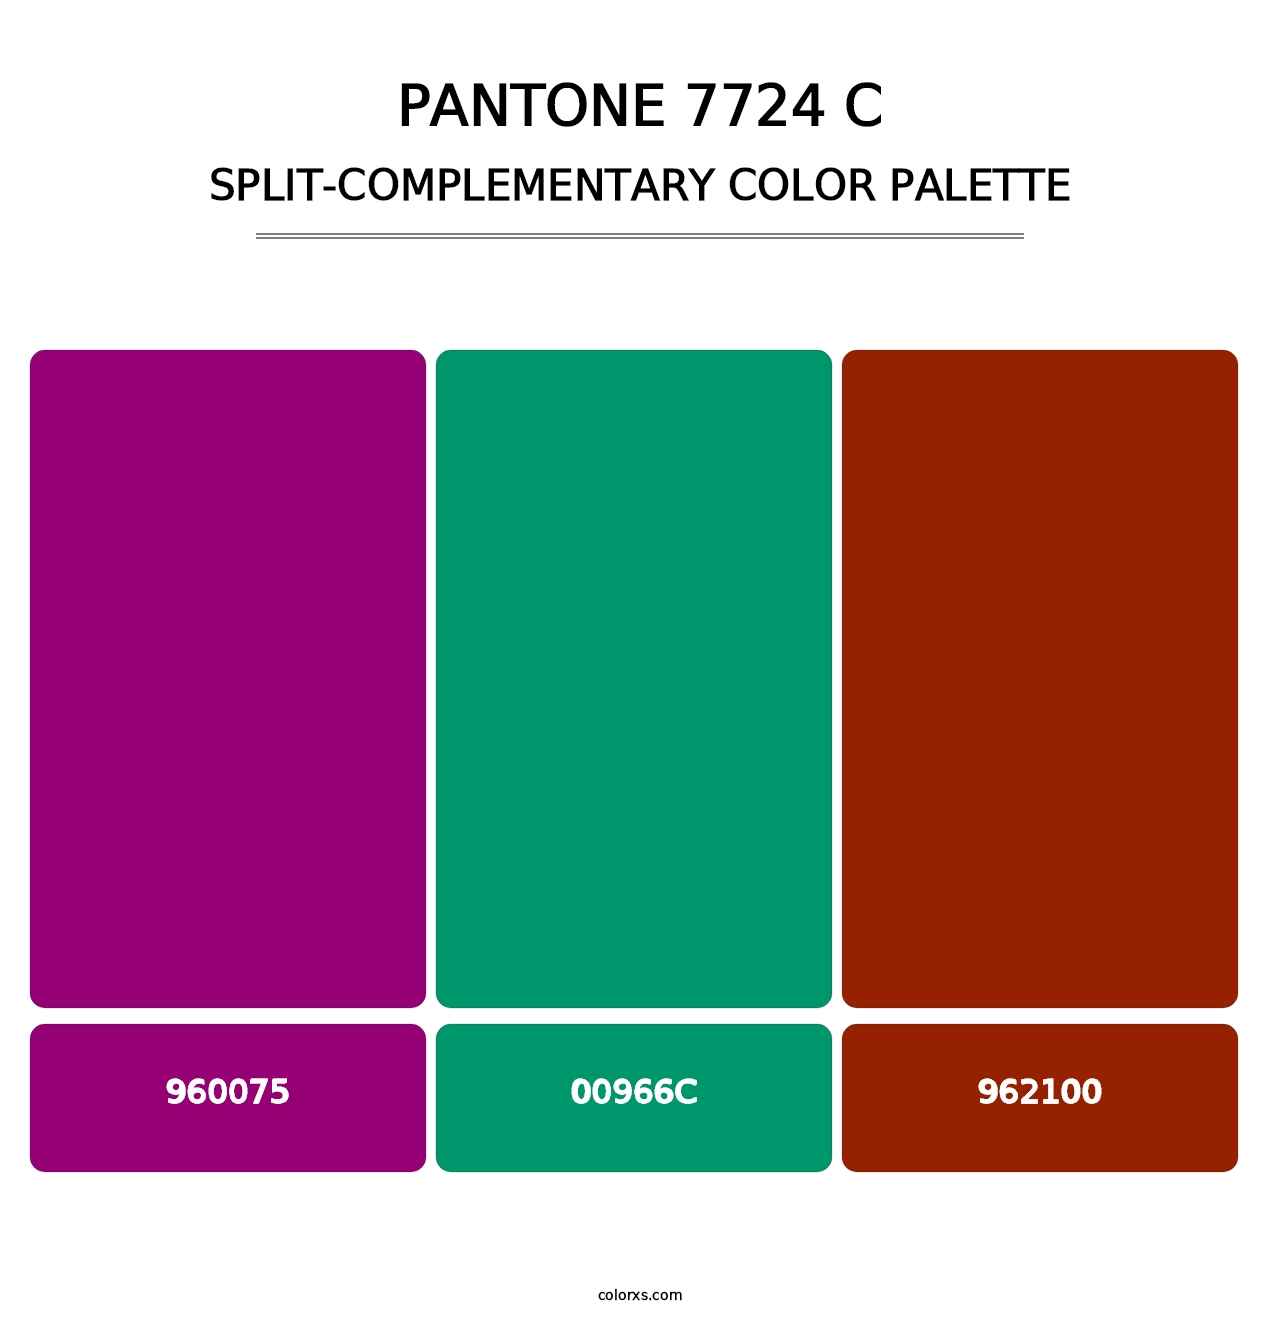 PANTONE 7724 C - Split-Complementary Color Palette